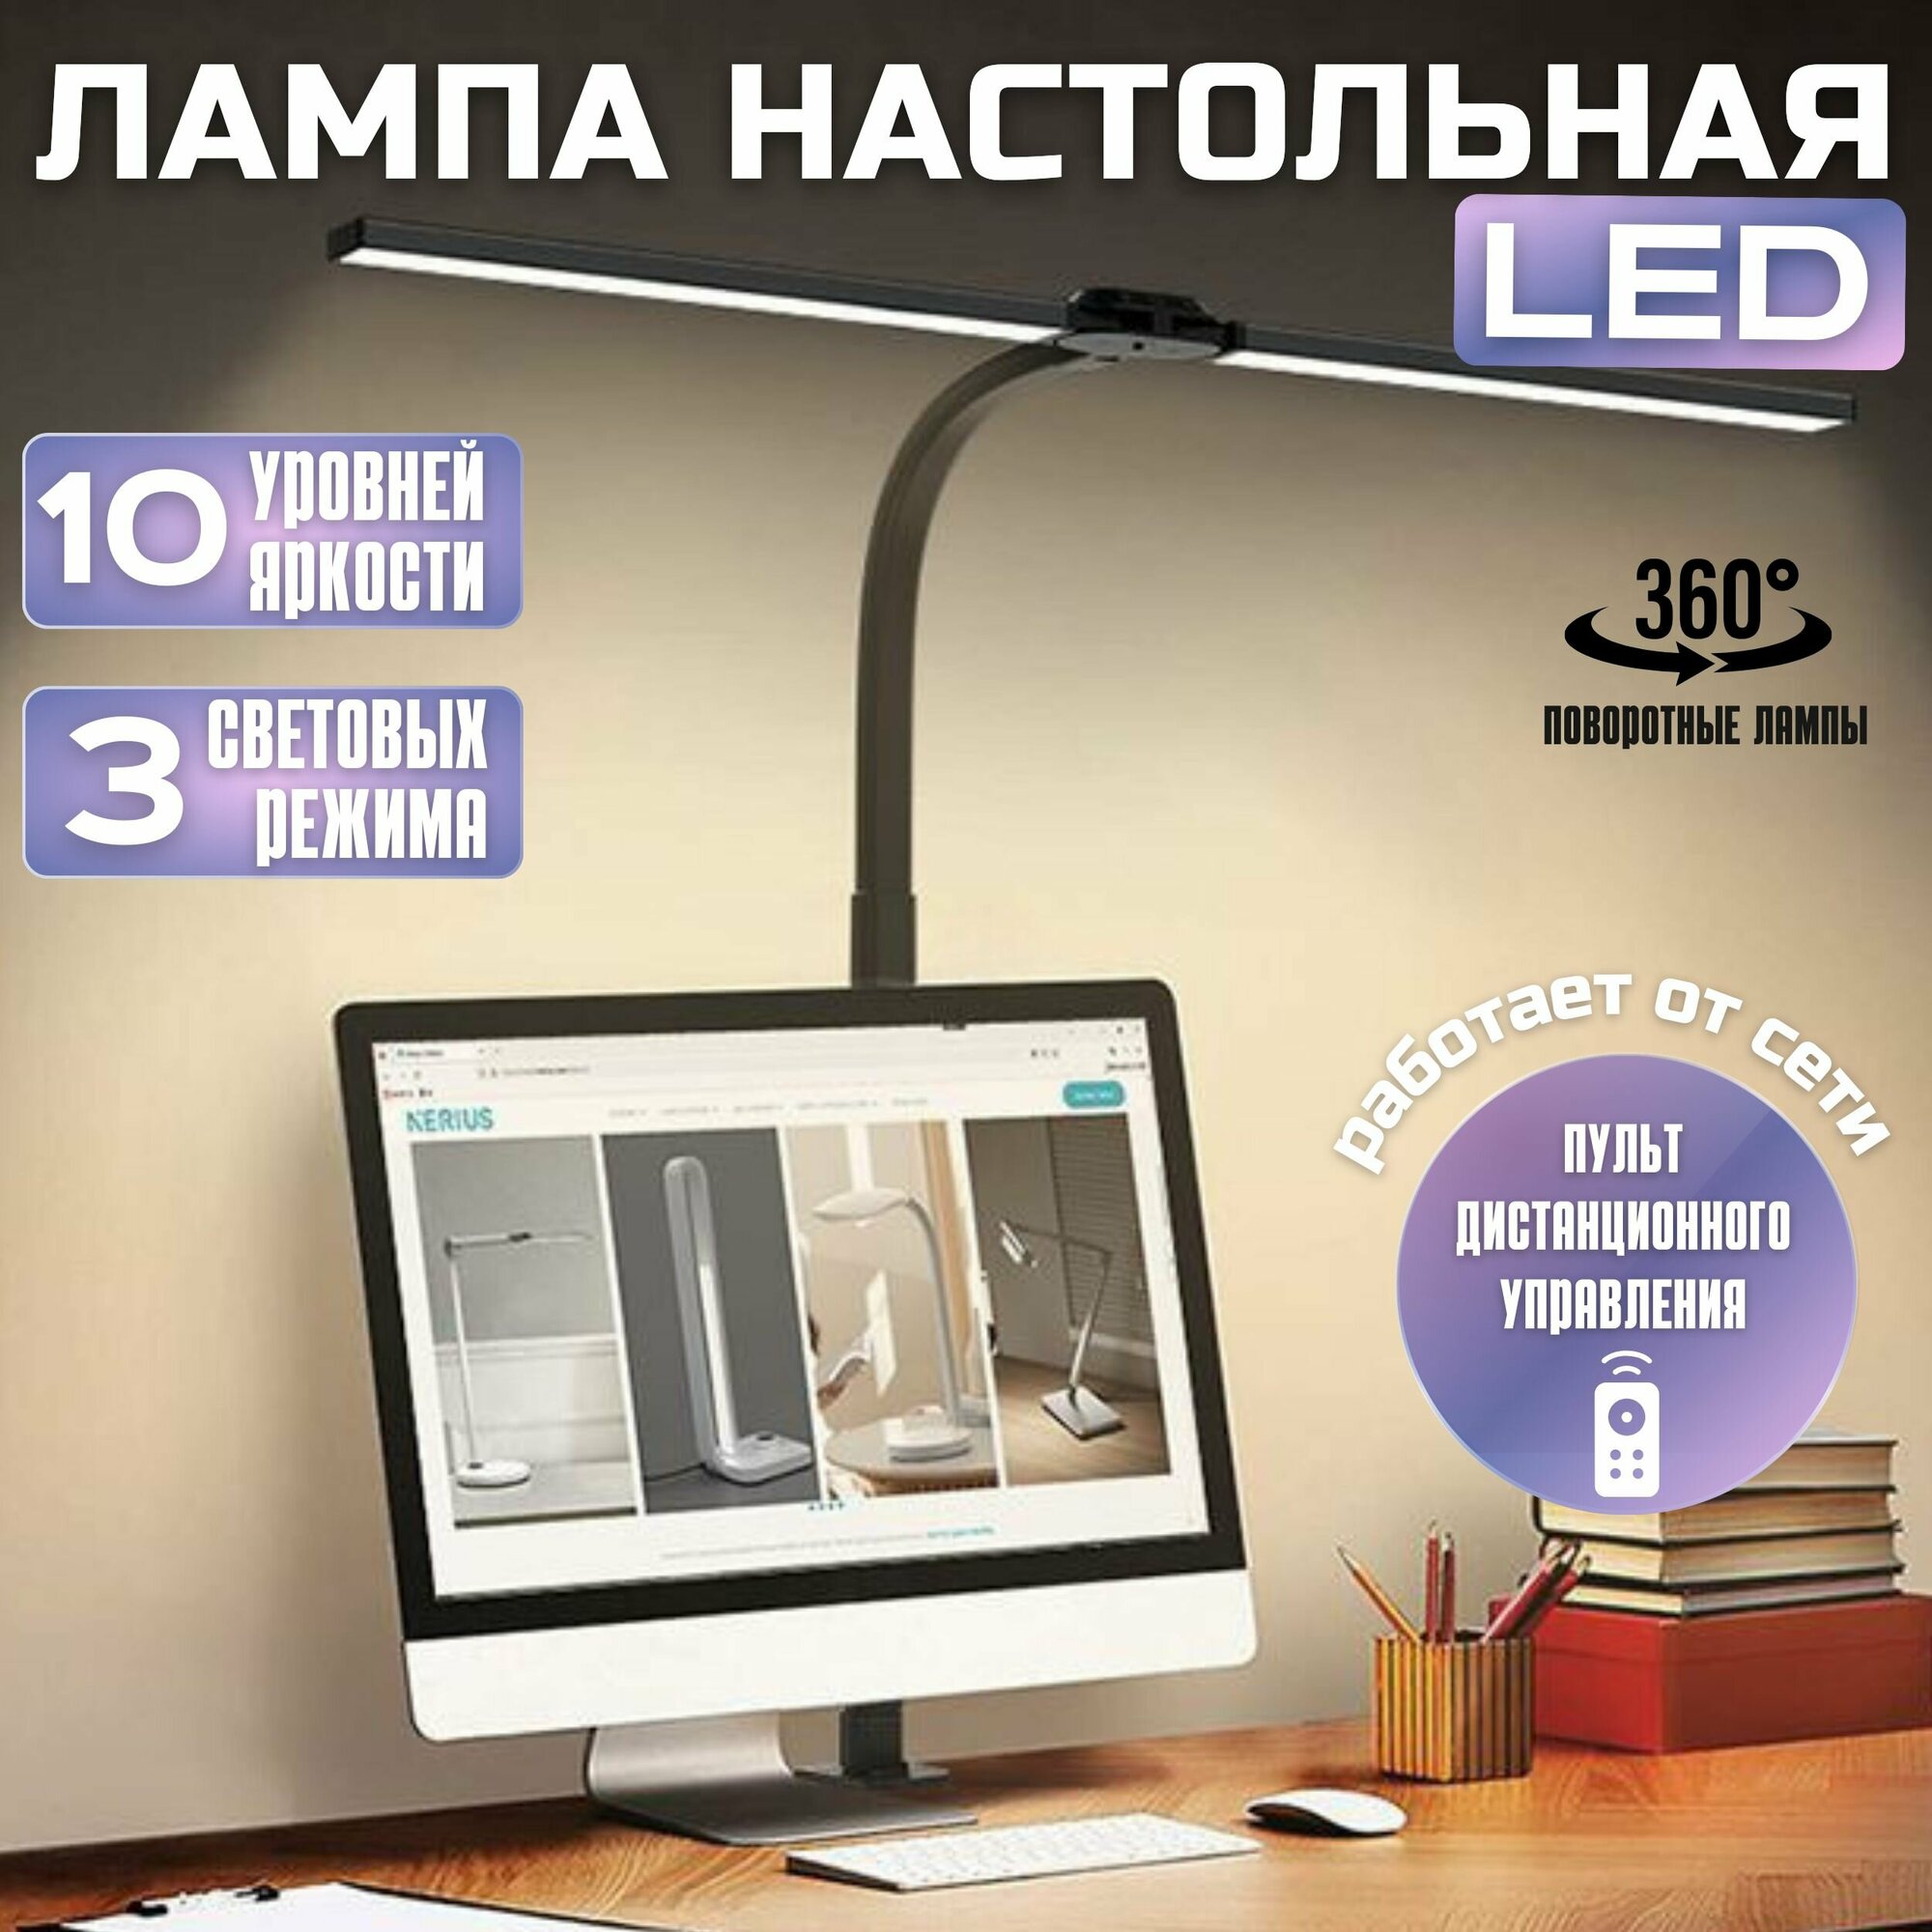 Лампа настольная светодиодная LED для рабочего стола школьника